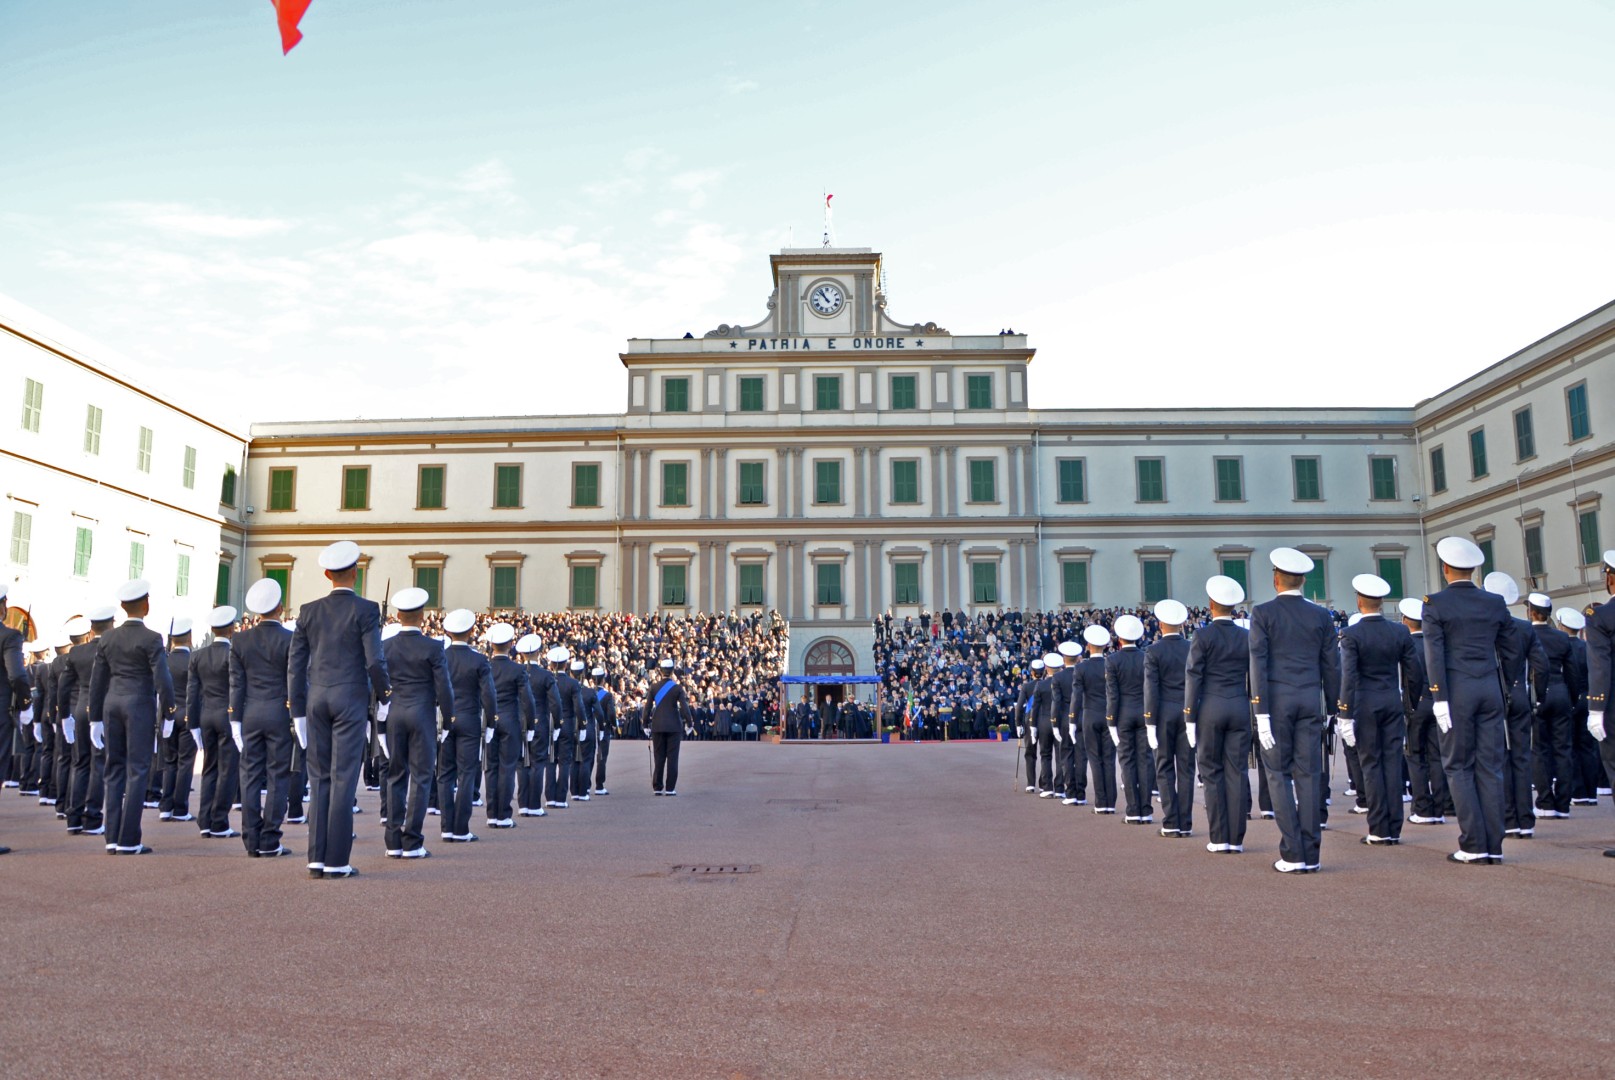 Marina militare: open day in Accademia Navale di Livorno